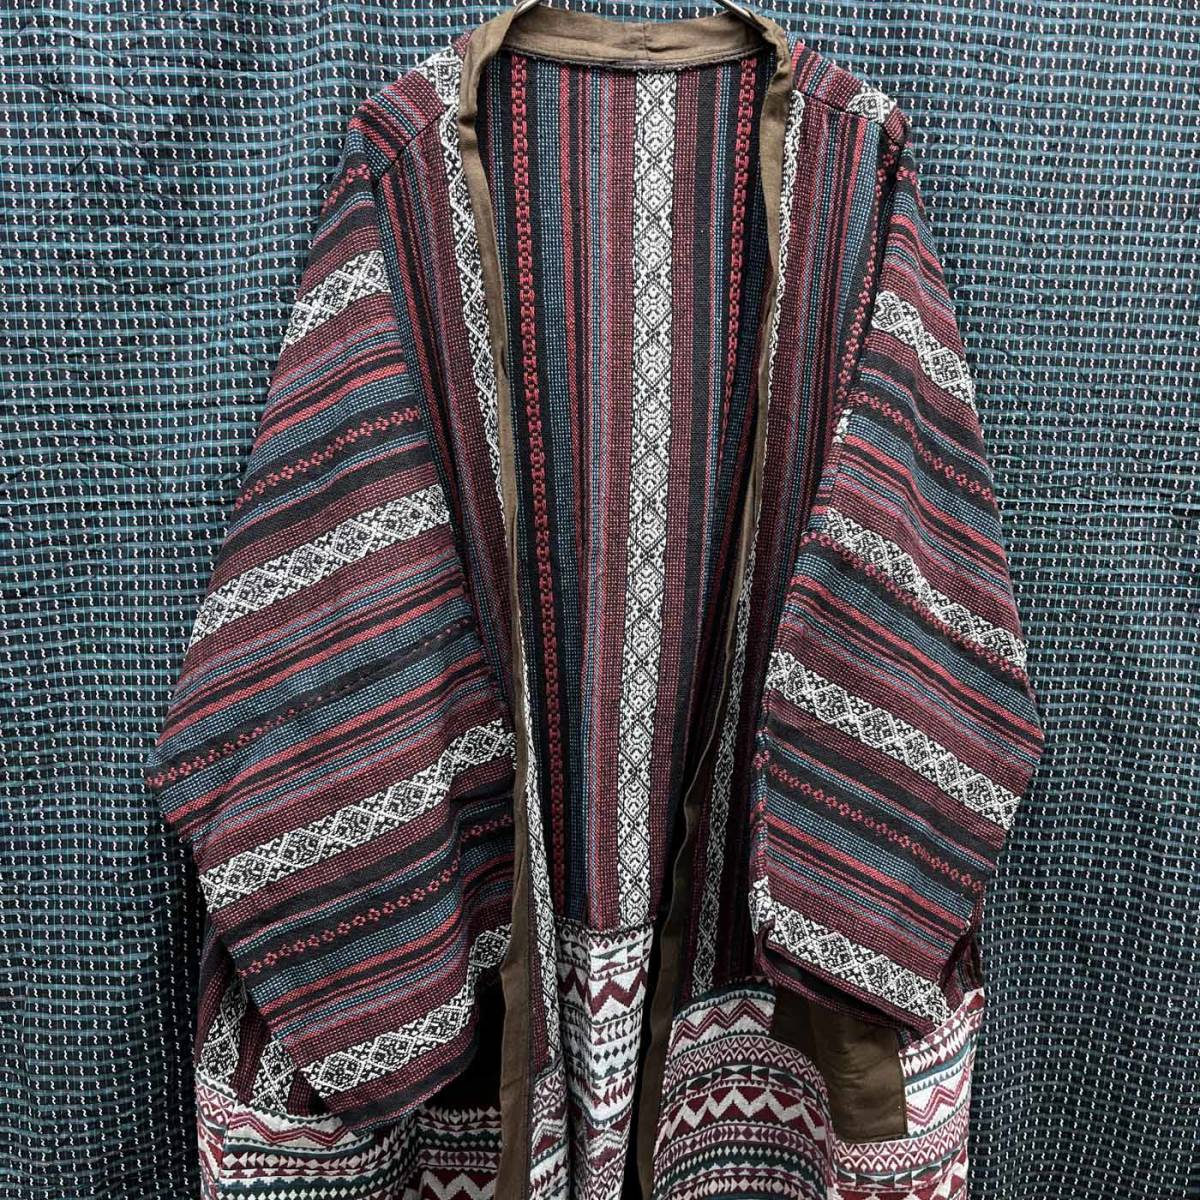 エスニック ロングコート 大きいサイズ 羽織り エスニック柄 民族柄 メンズ レディース フリーサイズ タイ製品 c-148_画像1